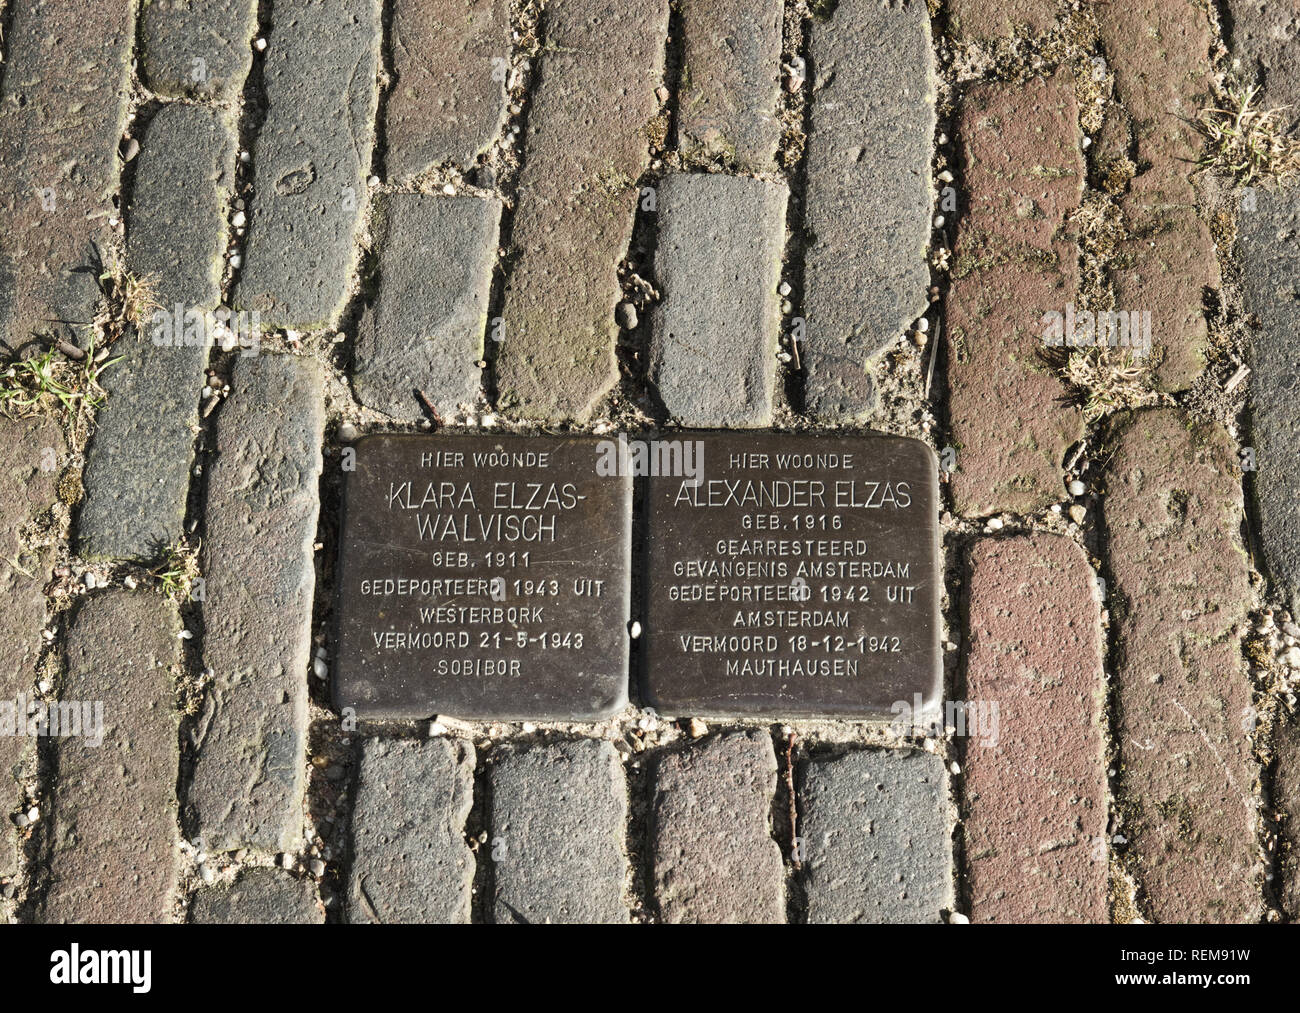 Stolperstein, plaques en laiton intégrés dans la chaussée en mémoire des victimes juives de l'Nazi, Amsterdam, Pays-Bas, Europe Banque D'Images